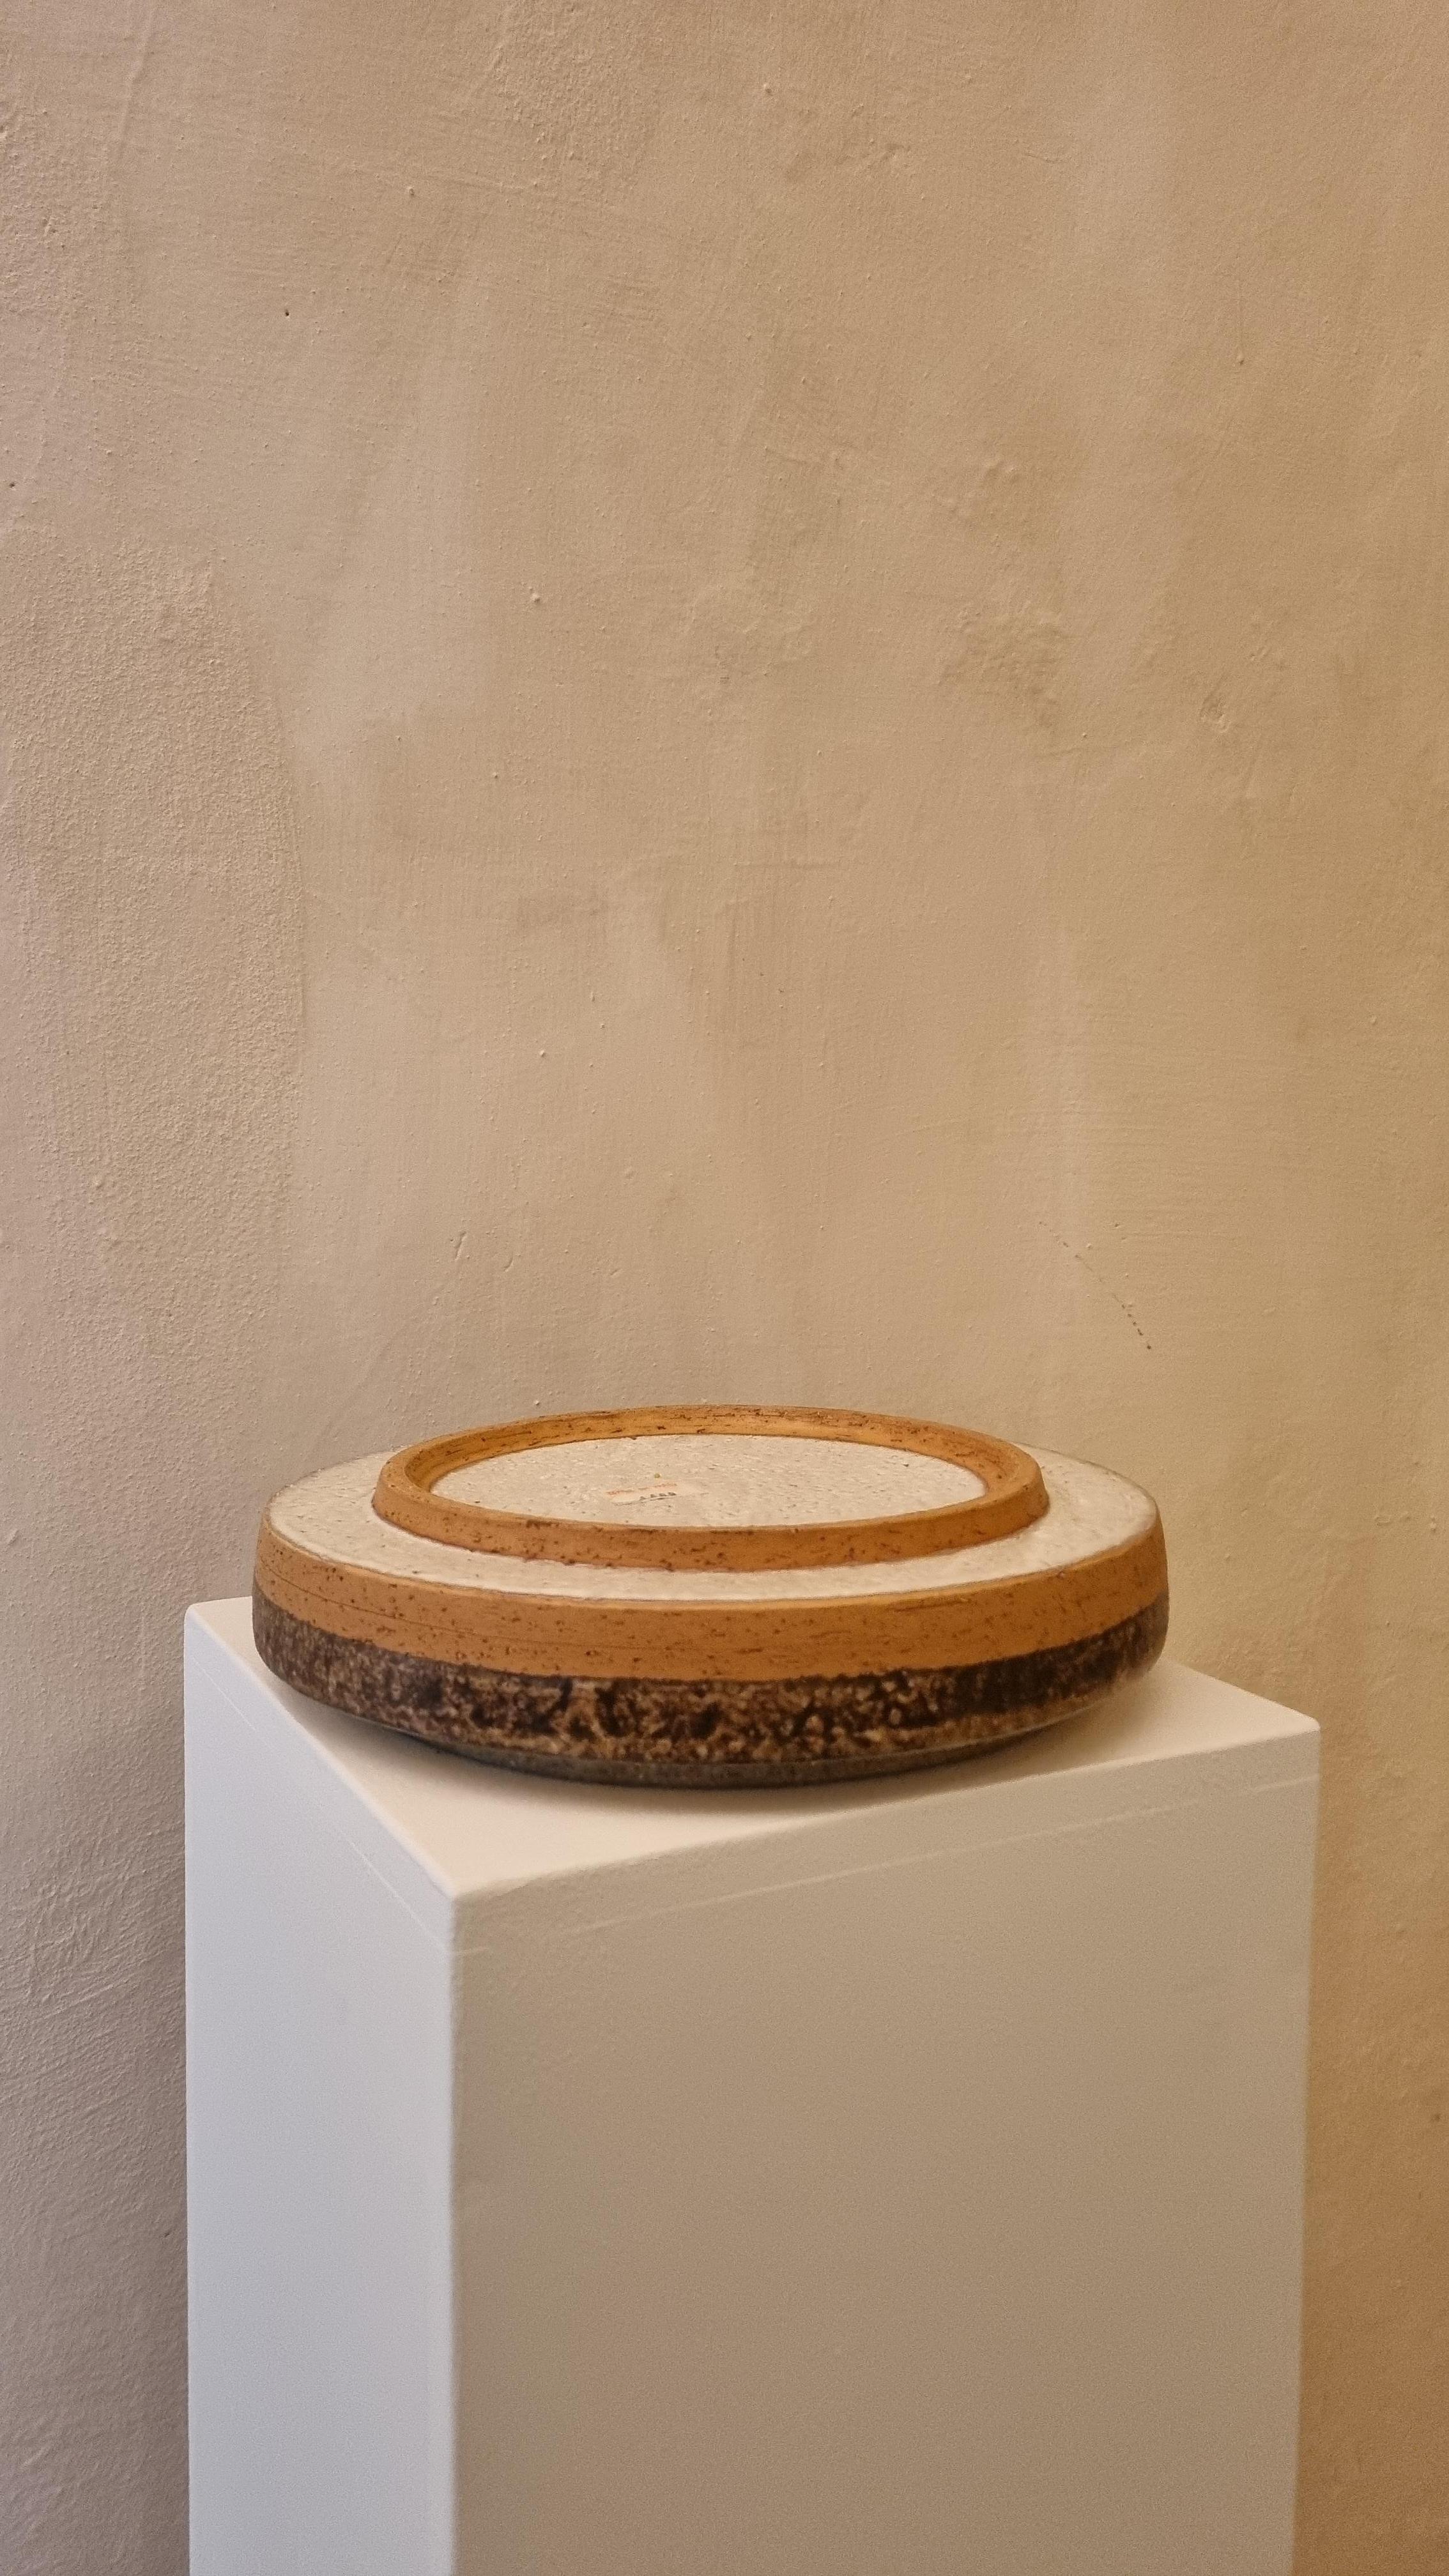 Italian Ashtray Ceramic by Aldo Londi for Ceramiche Bitossi Montelupo, 70s.